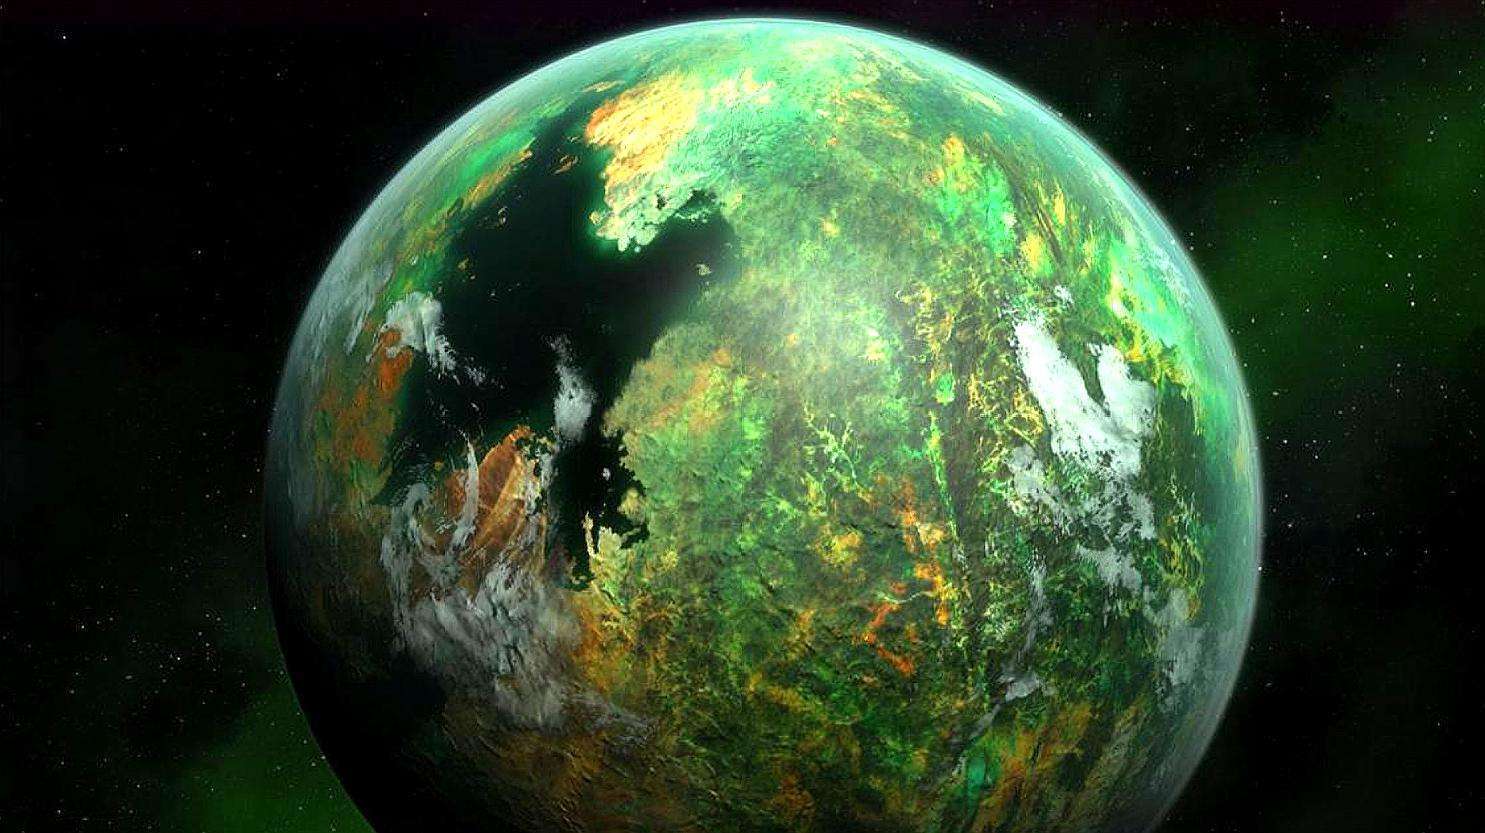 原创超大型超级地球被发现距地42光年上面存不存在高级文明